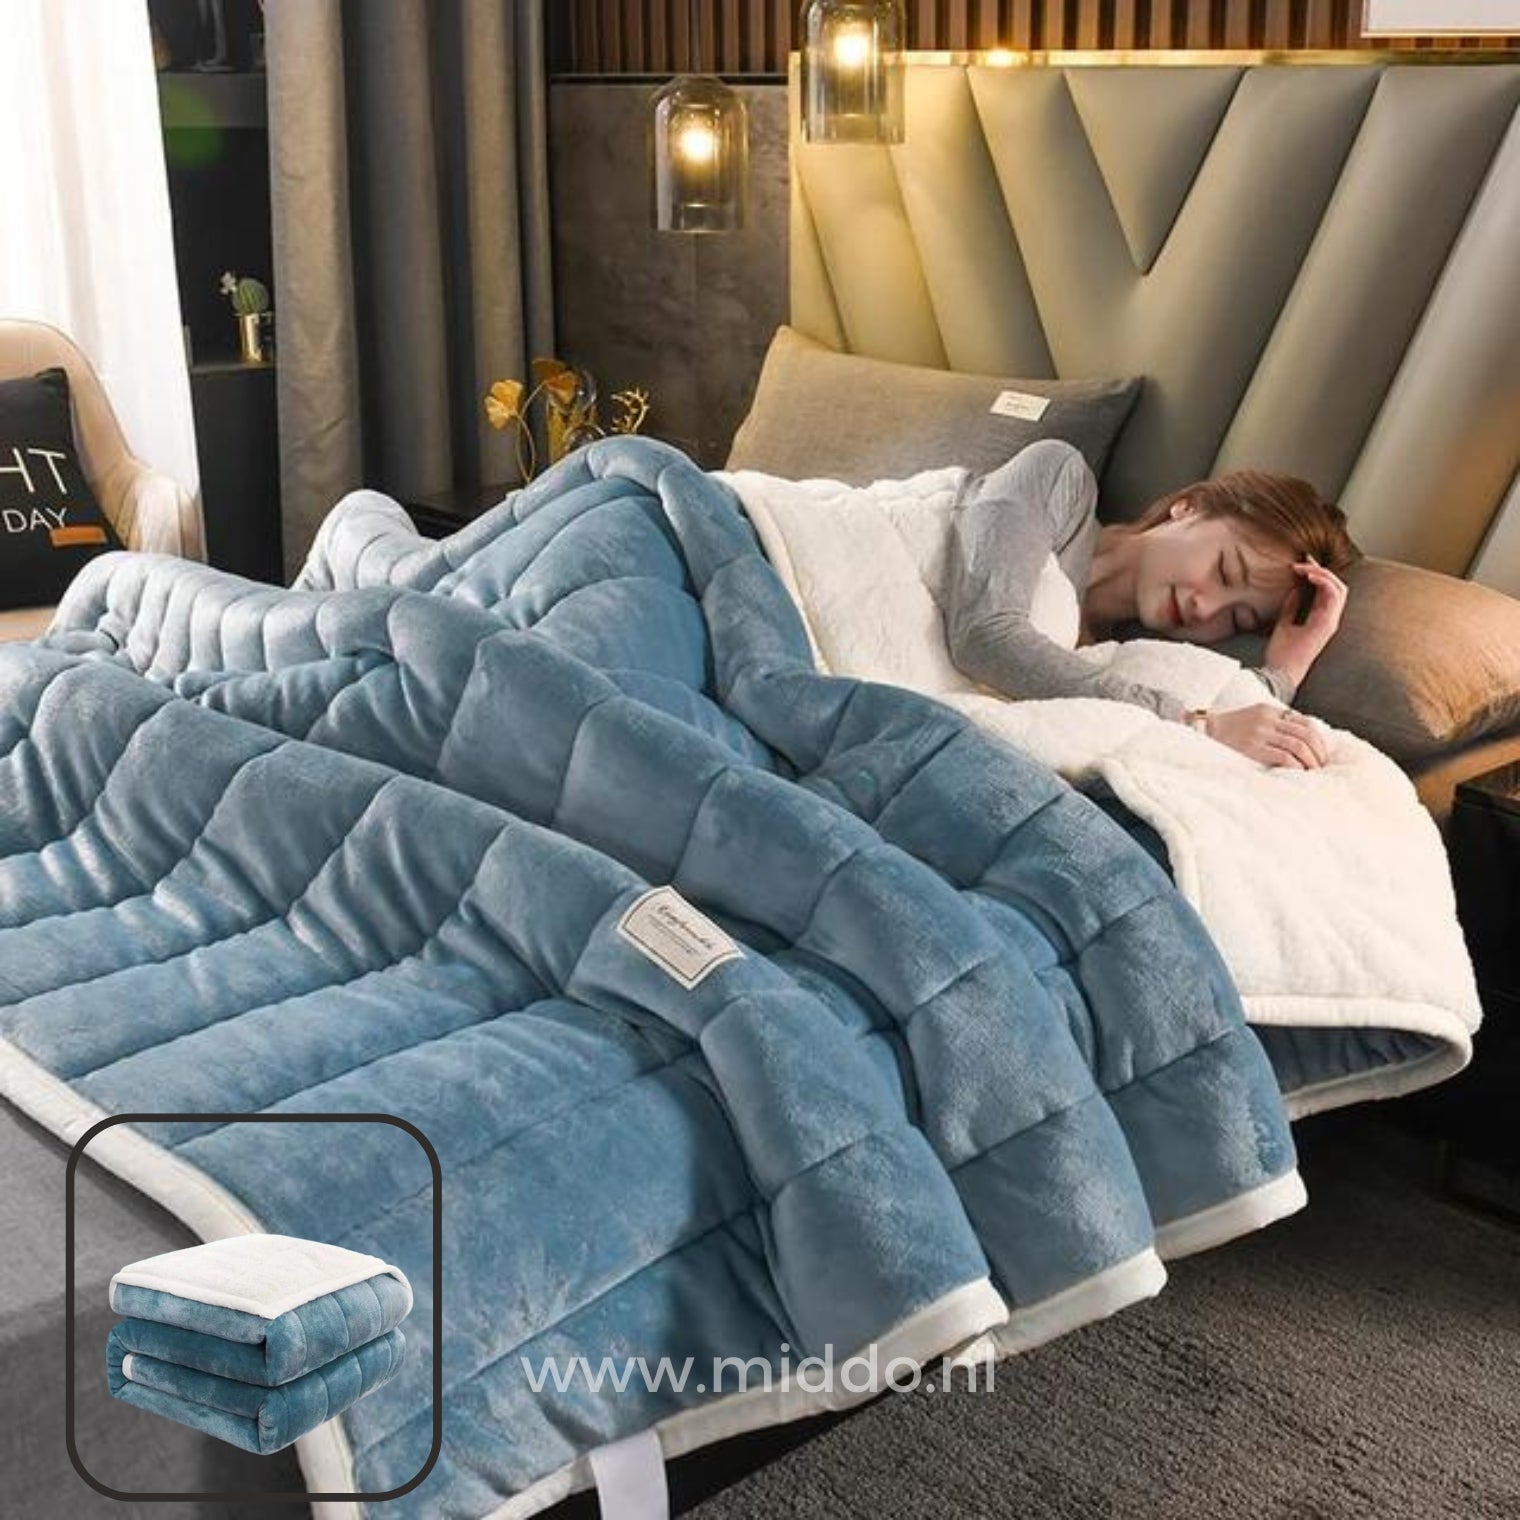 CozyFleece blauw pluche woldeken op bed met slapende persoon